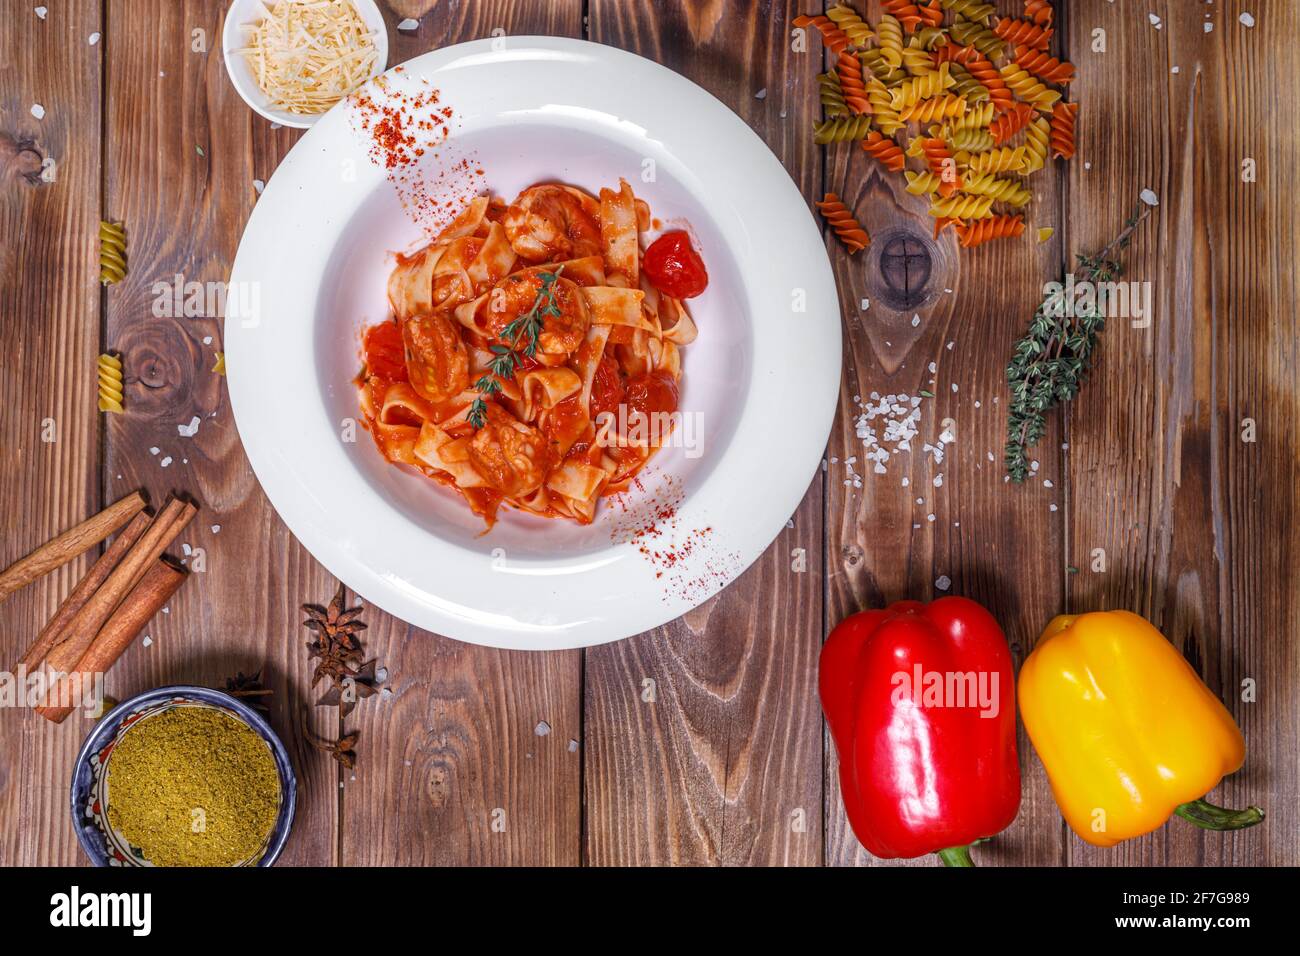 Pasta con salsa in un piatto, peperone, timo e altre spezie su fondo di legno marrone. Layout piatto. Foto Stock